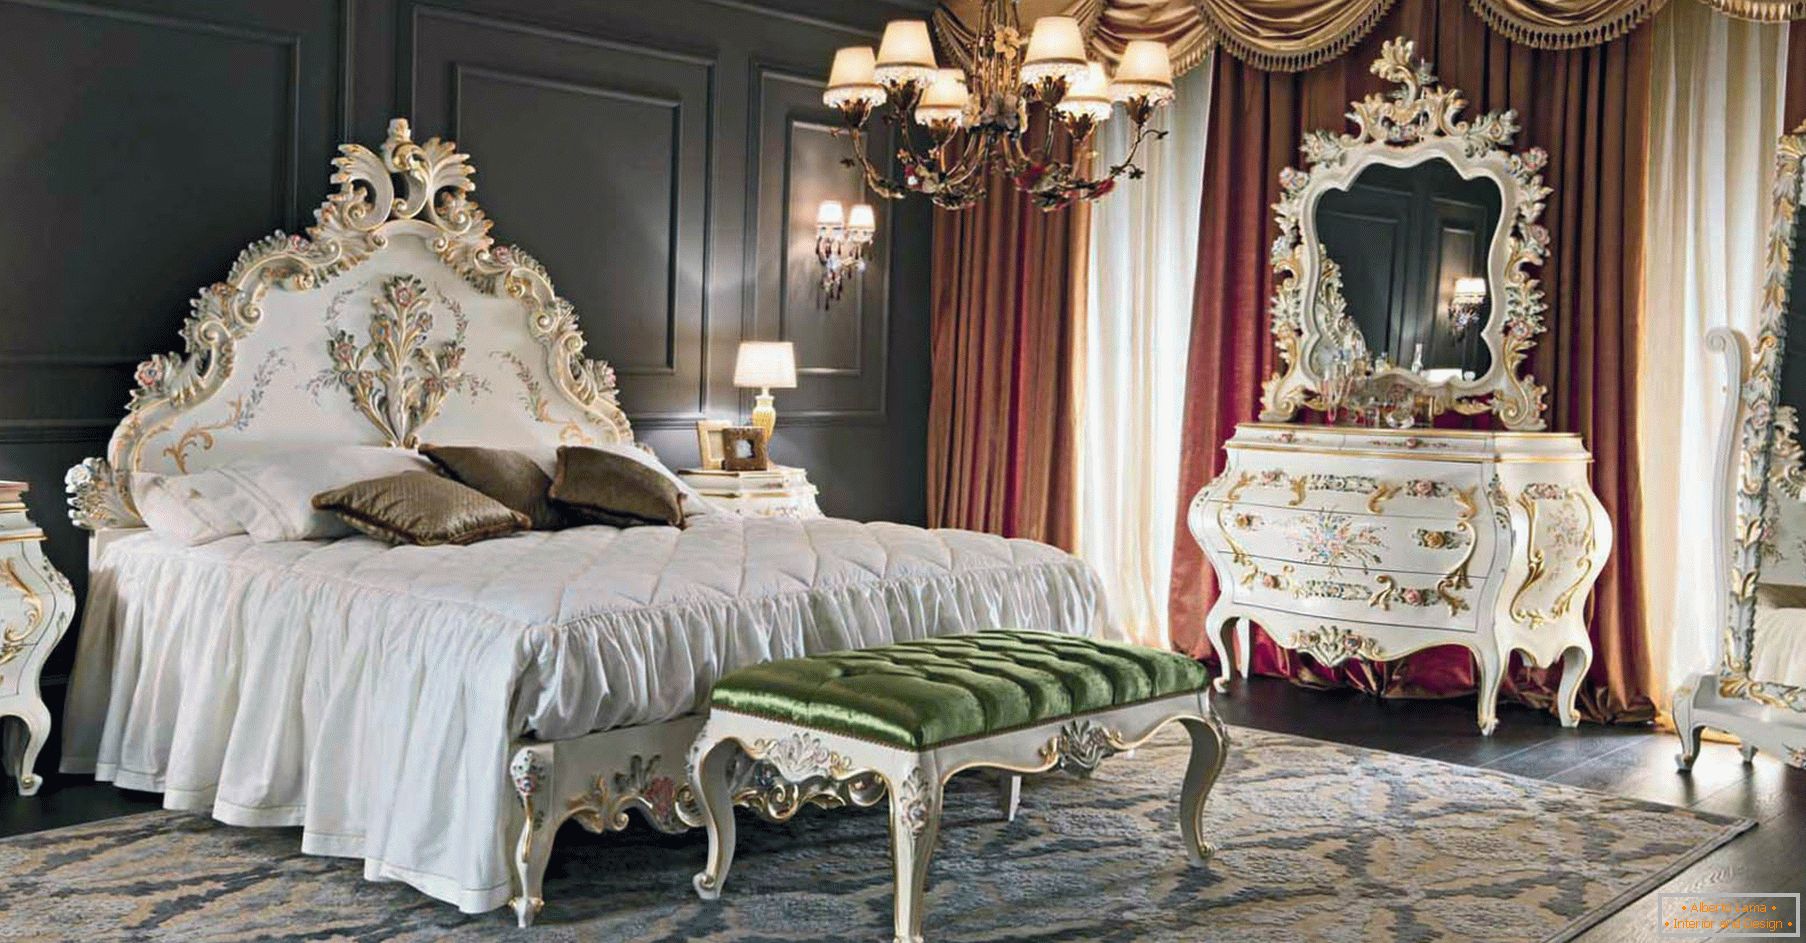 Для оформлення спальні використовувався контраст темно-коричневих, золотих, червоних і білих квітів. Меблі підібрана відповідно до стилю бароко.